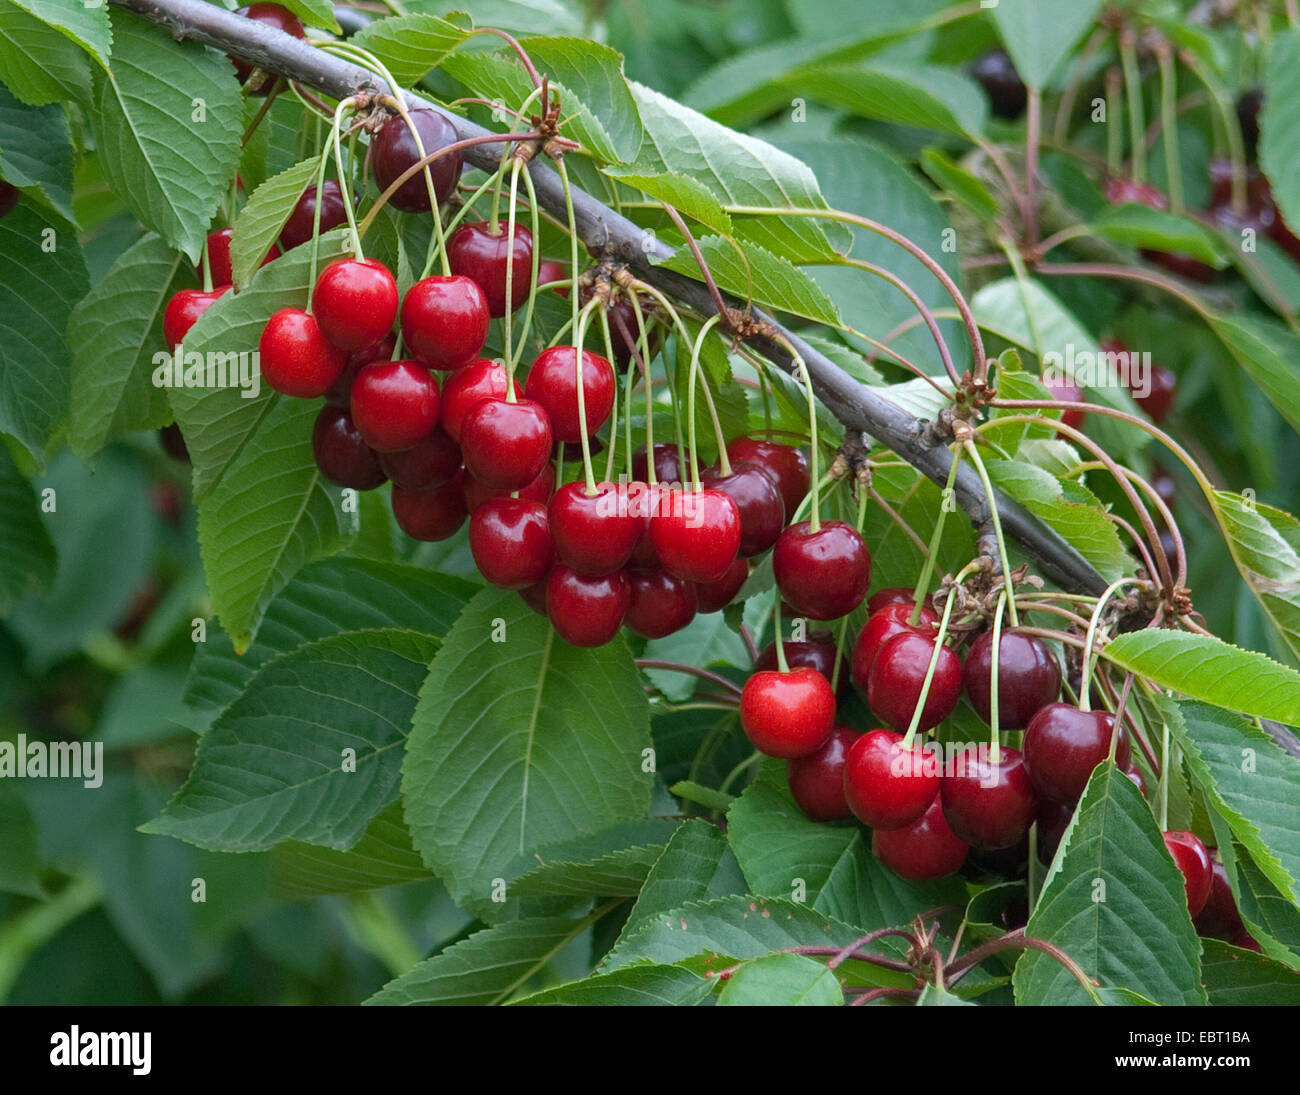 Cherry tree, Sweet cherry (Prunus avium 'Bianca', Prunus avium Bianca), cultivar Bianca, cherries on a tree Stock Photo